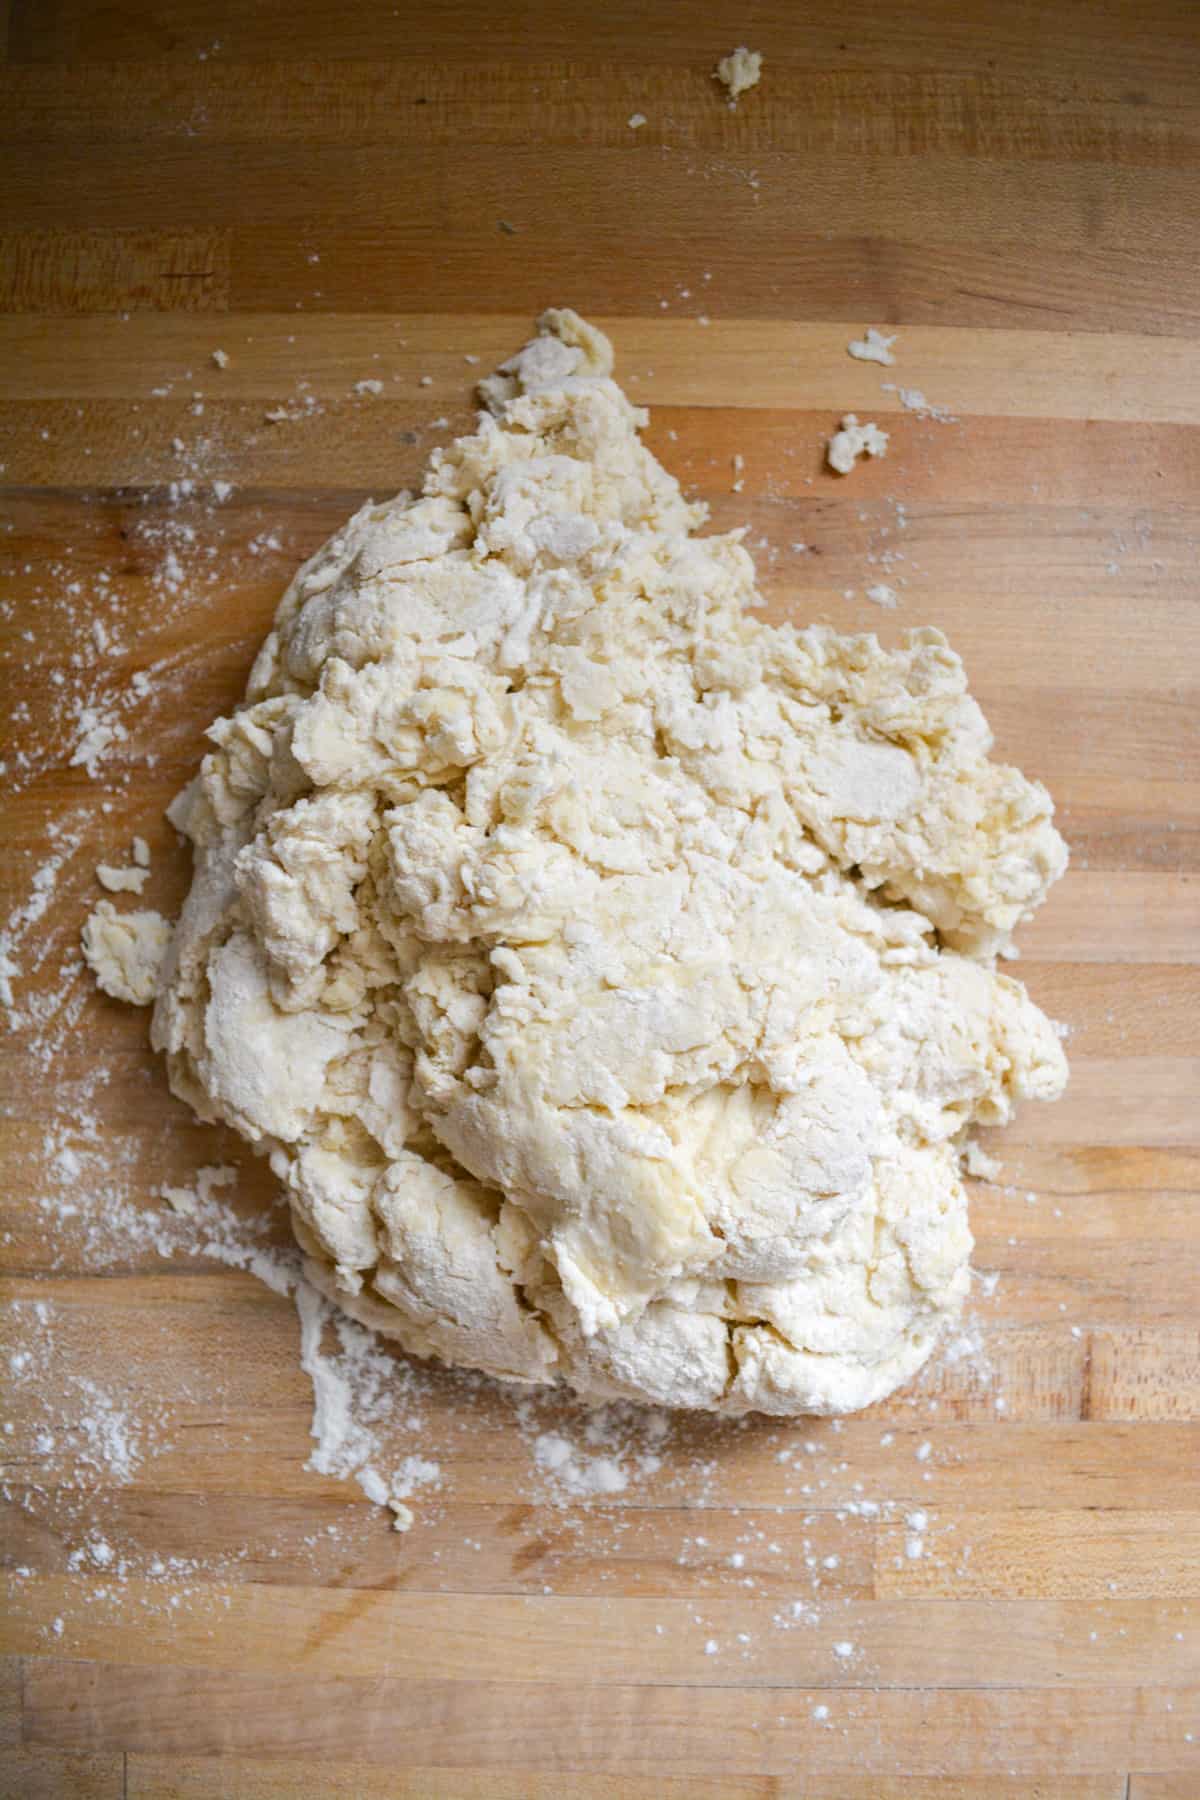 Shaggy dough on a floured wooden surface.